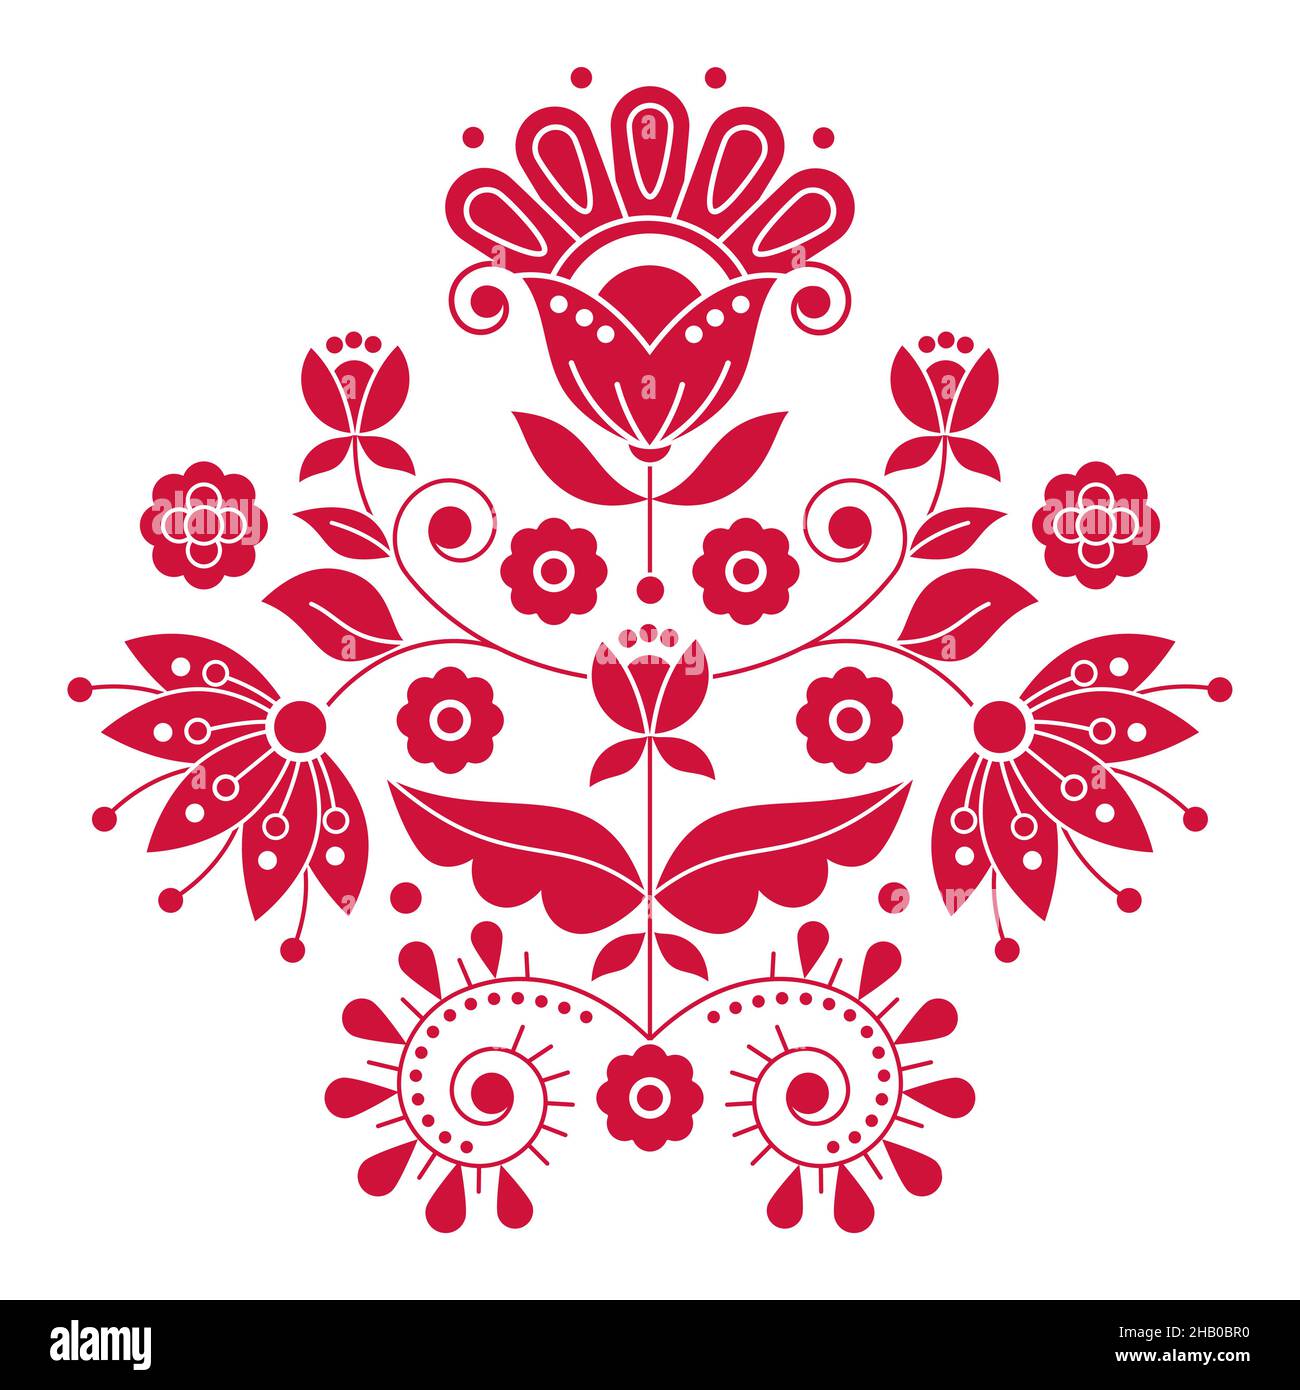 Skandinavisches niedliches Folk Art Vektor-Design, inspiriert von traditionellen Stickereien aus Schweden, Retro-Dekoration mit Blumen, Wirbeln und Blättern Stock Vektor